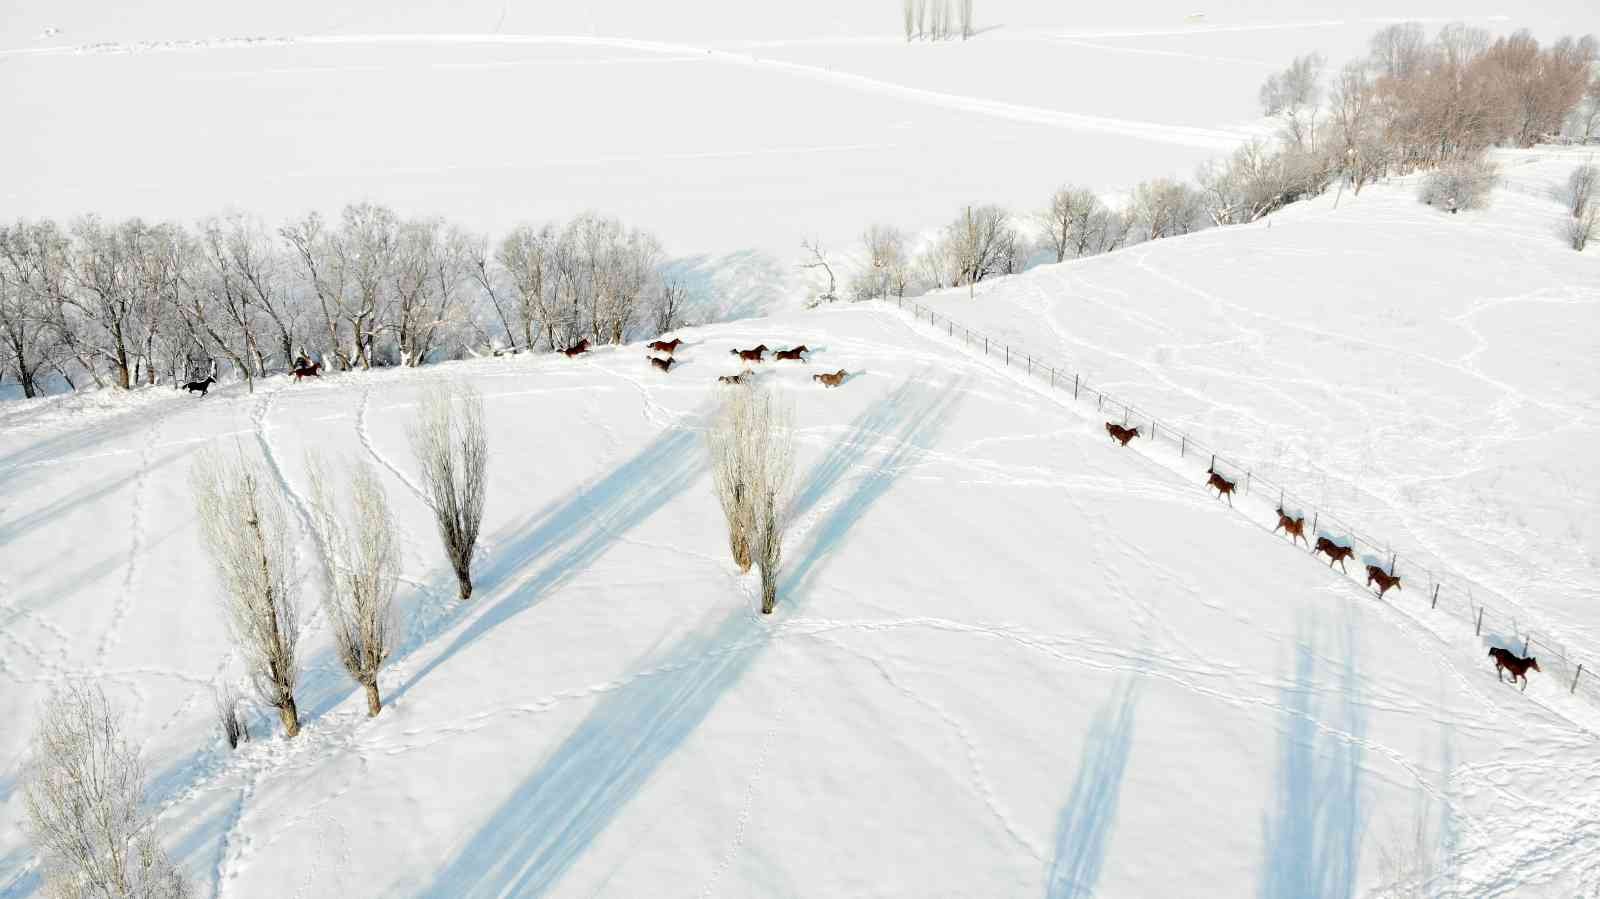 Türkiye’nin yarış atları Sultan Alparslan diyarı Muş’ta kar üzerinde yetiştiriliyor #mus